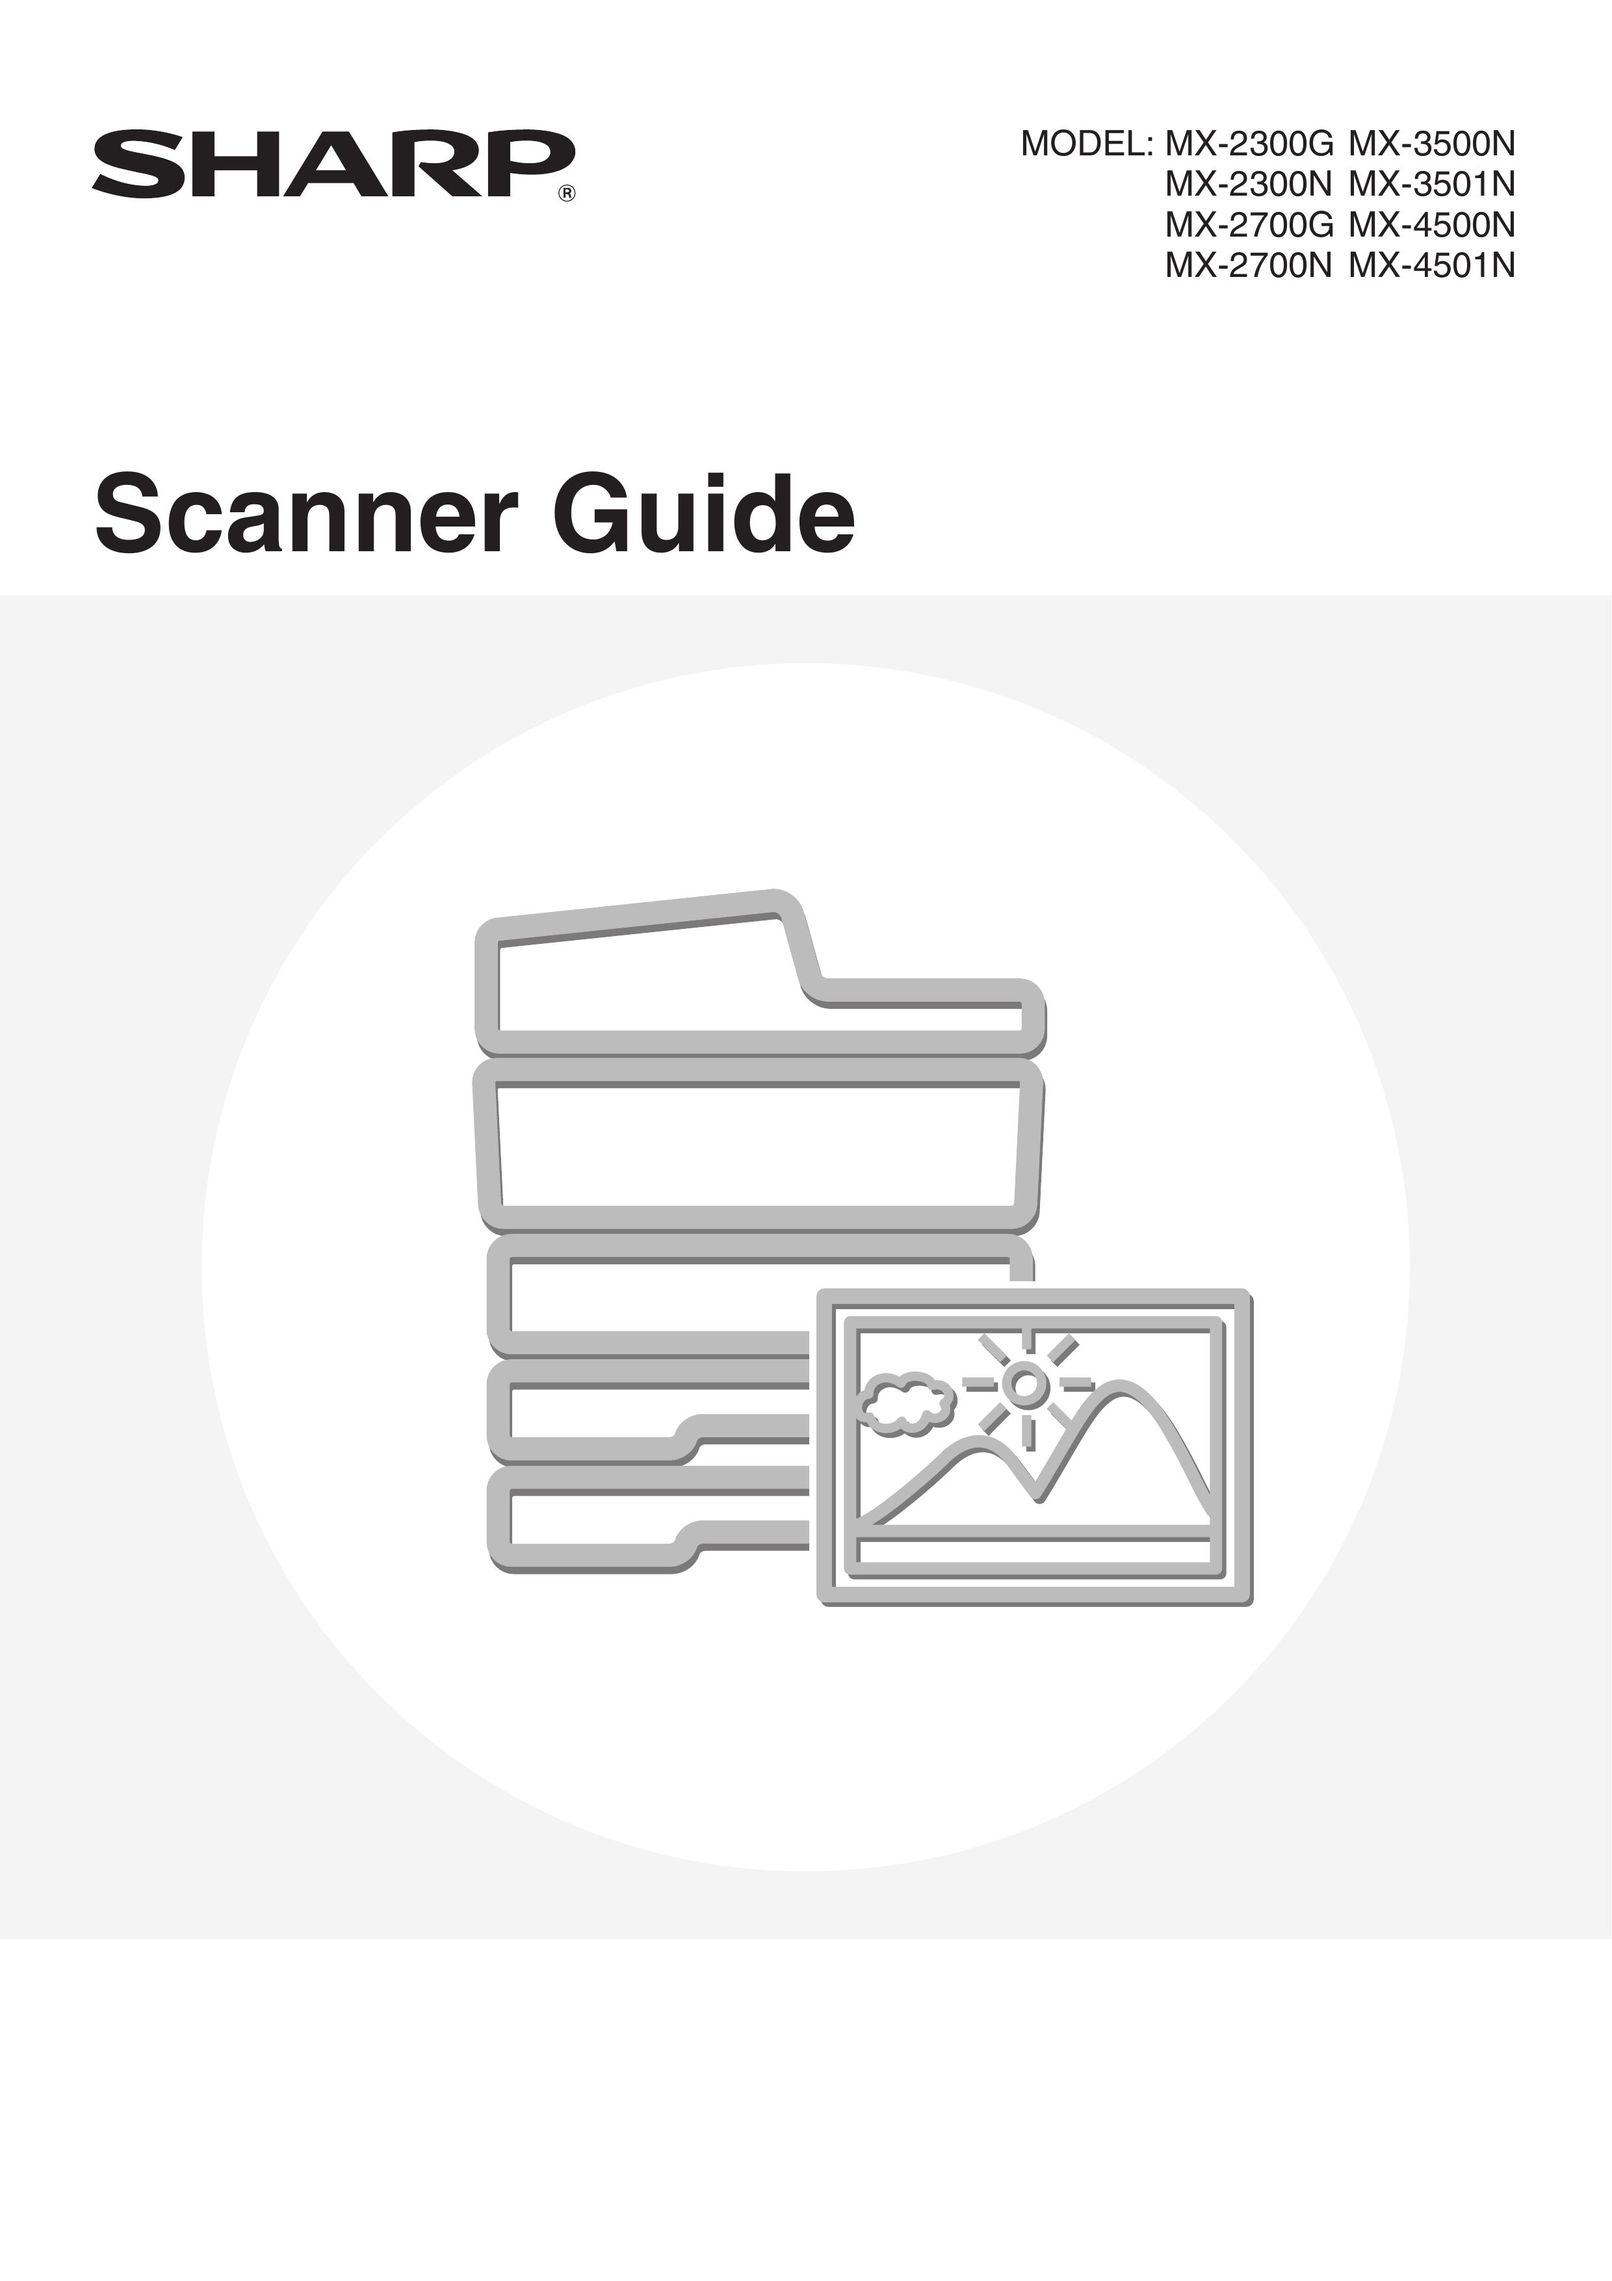 Sharp MX-3501N Scanner User Manual